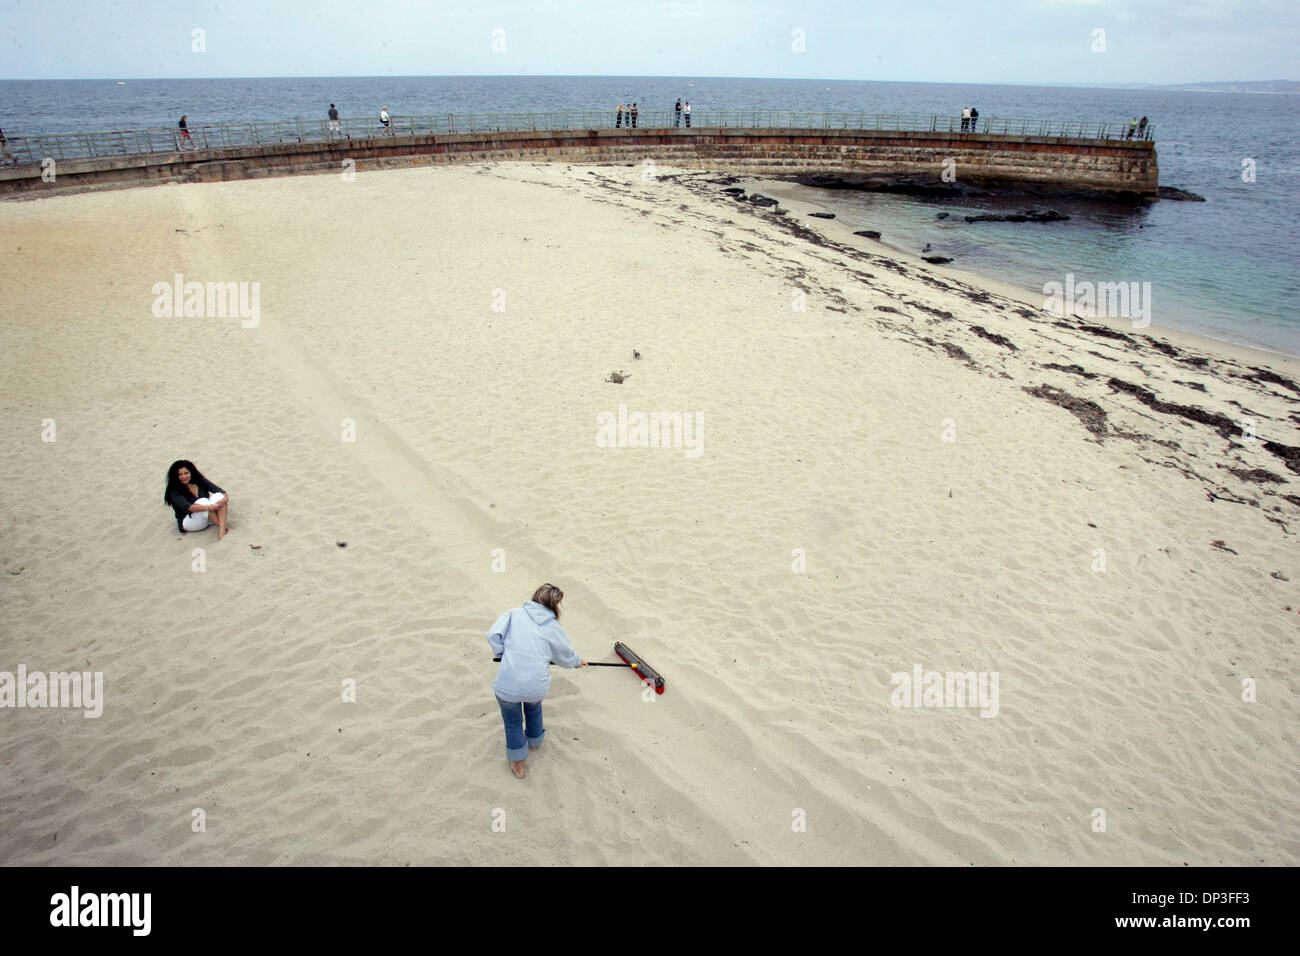 3. Juli 2006; San Diego, CA, USA; THERESA PAYNE ist ein "Rake eine Linie" freiwilliger an der La Jolla Kinder Pool. Sie nutzt einen Besen um zu bemerken, die Linie im Sand die Besucher hoffentlich Strand nicht überqueren und potenziell stören die Dichtungen.    Obligatorische Credit: Foto von Scott Linnett/SDU-T/ZUMA Press. (©) Copyright 2006 by SDU-T Stockfoto